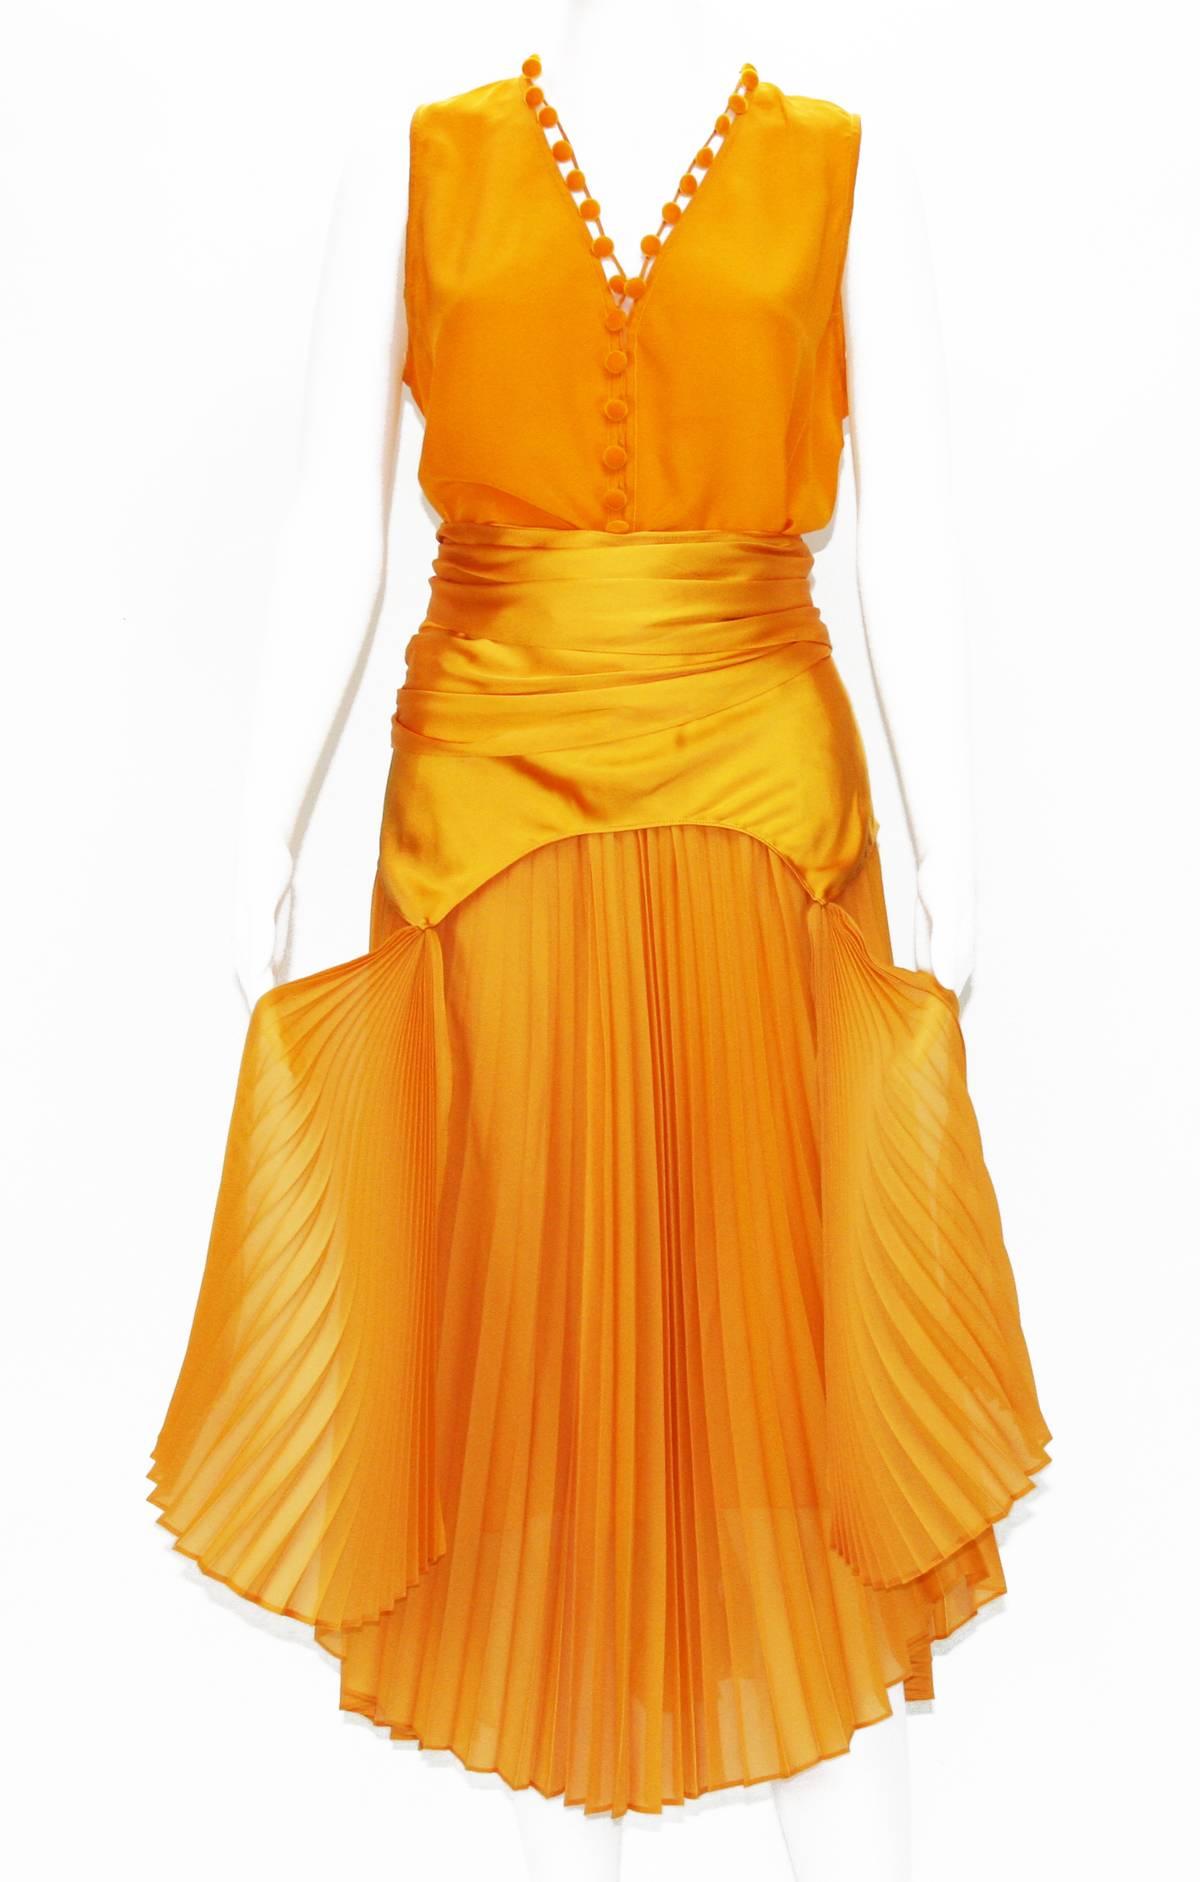 Tom Ford für Yves Saint Laurent Seide Orange Oberteil-Rock-Set 
Kollektion S/S 2004
100% orangefarbene Seide
Top - Französisch Größe 38, Samt Knöpfe Schließung, neu mit Tag.
Maße: Länge - vorne (26 Zoll), hinten (29), Brustumfang - 36.
Rock -